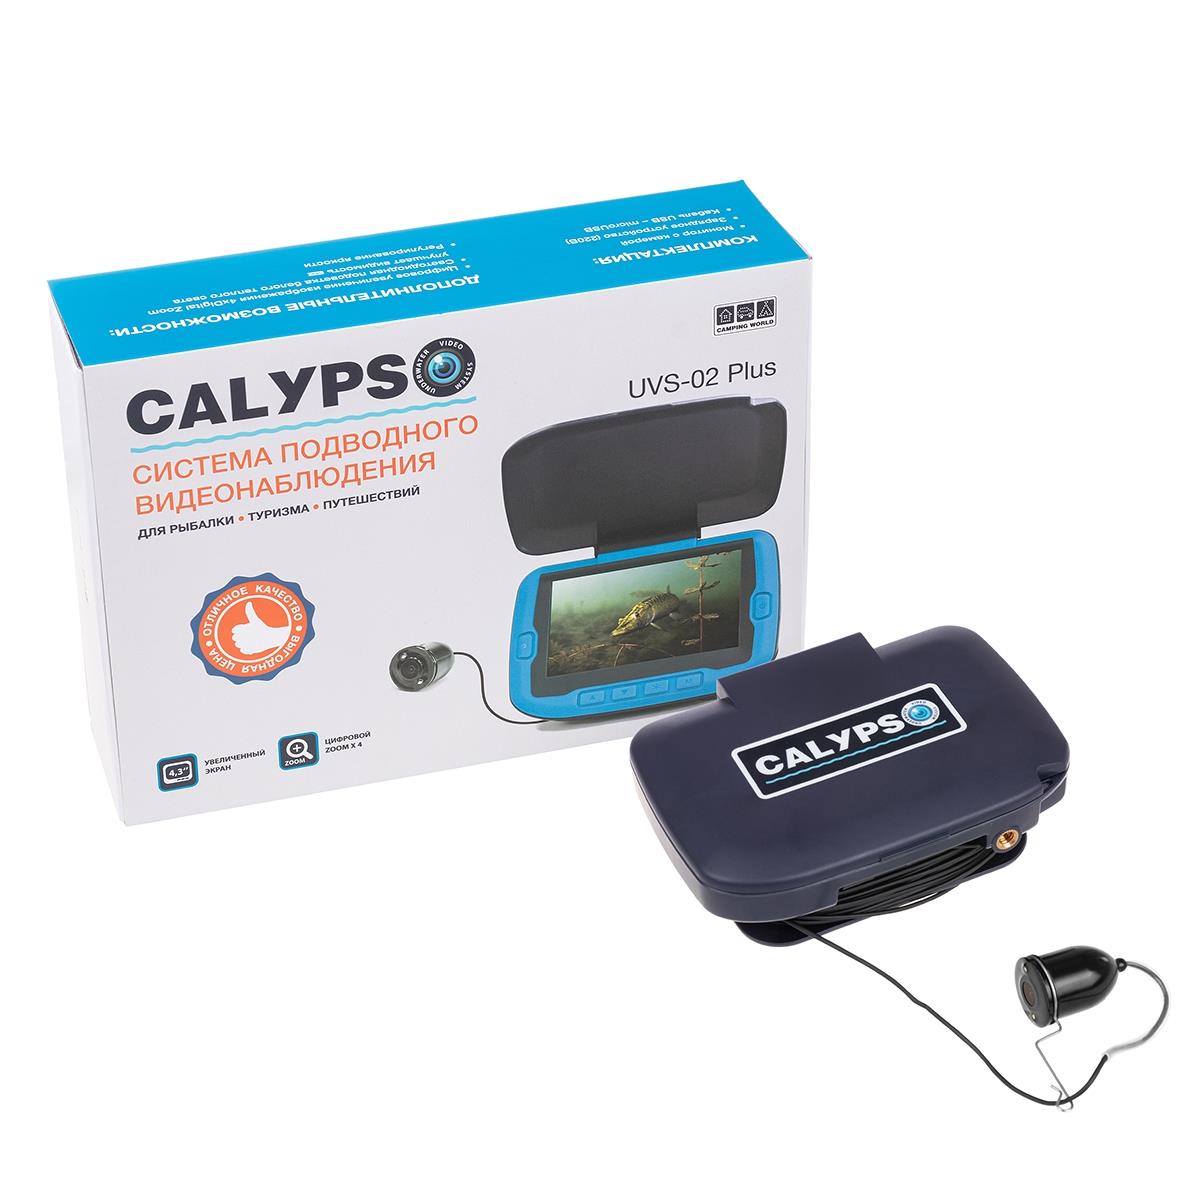 Подводная видеокамера CALYPSO UVS-02 PLUS (FDV-1112) брелок для поиска ключей